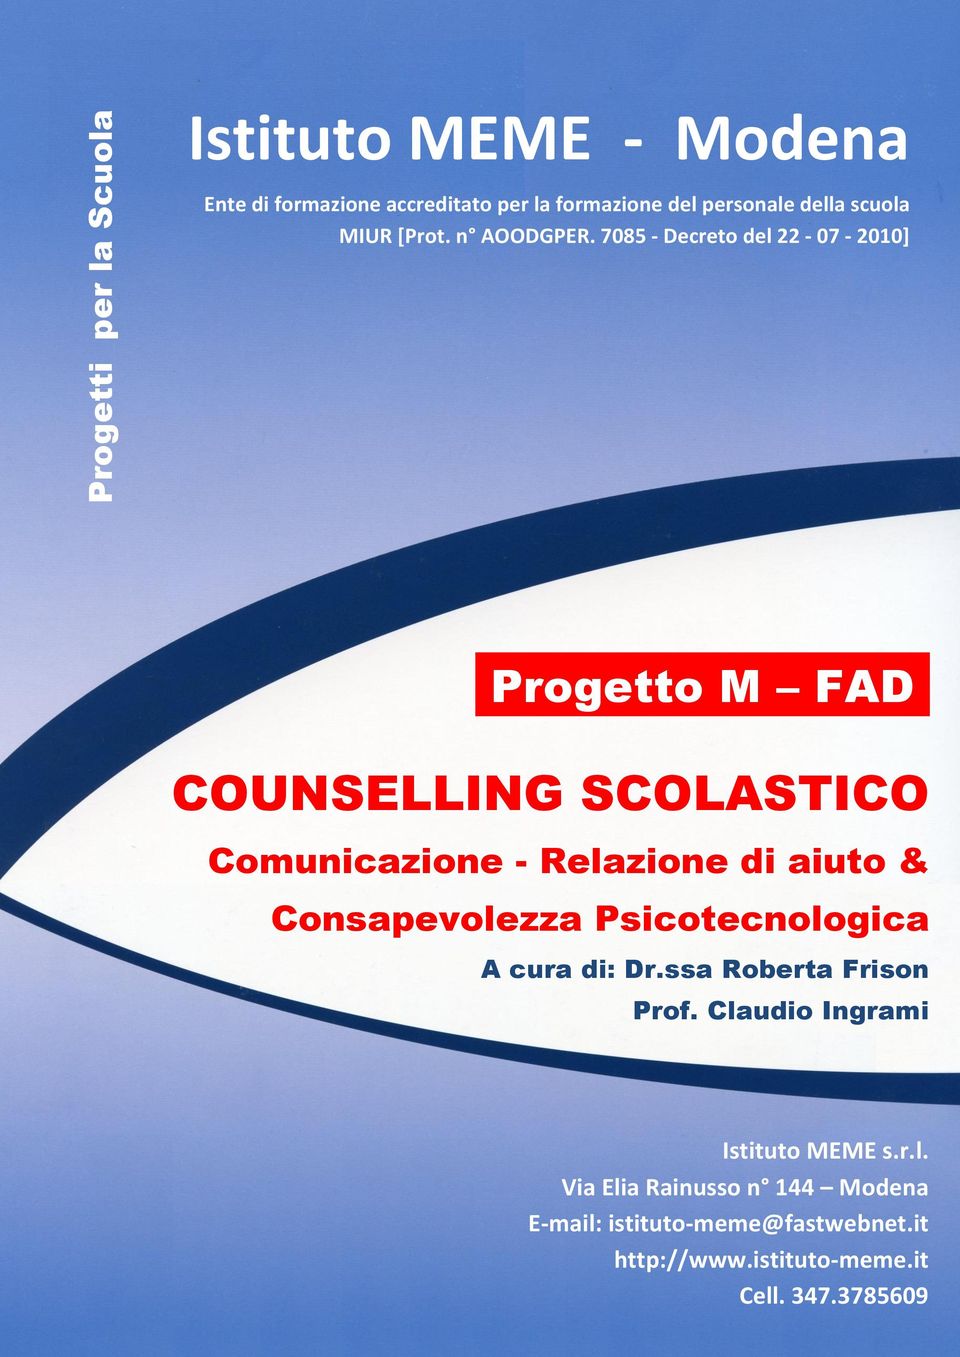 COUNSELLING SCOLASTICO Comunicazione - Relazione di aiuto & Consapevolezza Psicotecnologica A cura di: Dr.